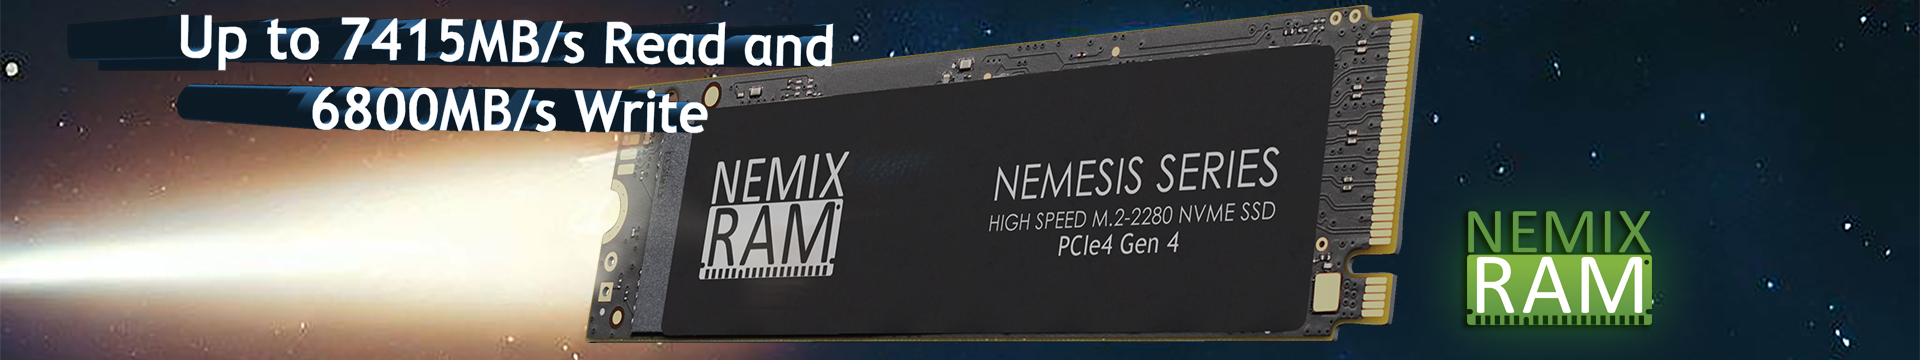 Nemesis SSD NVMe